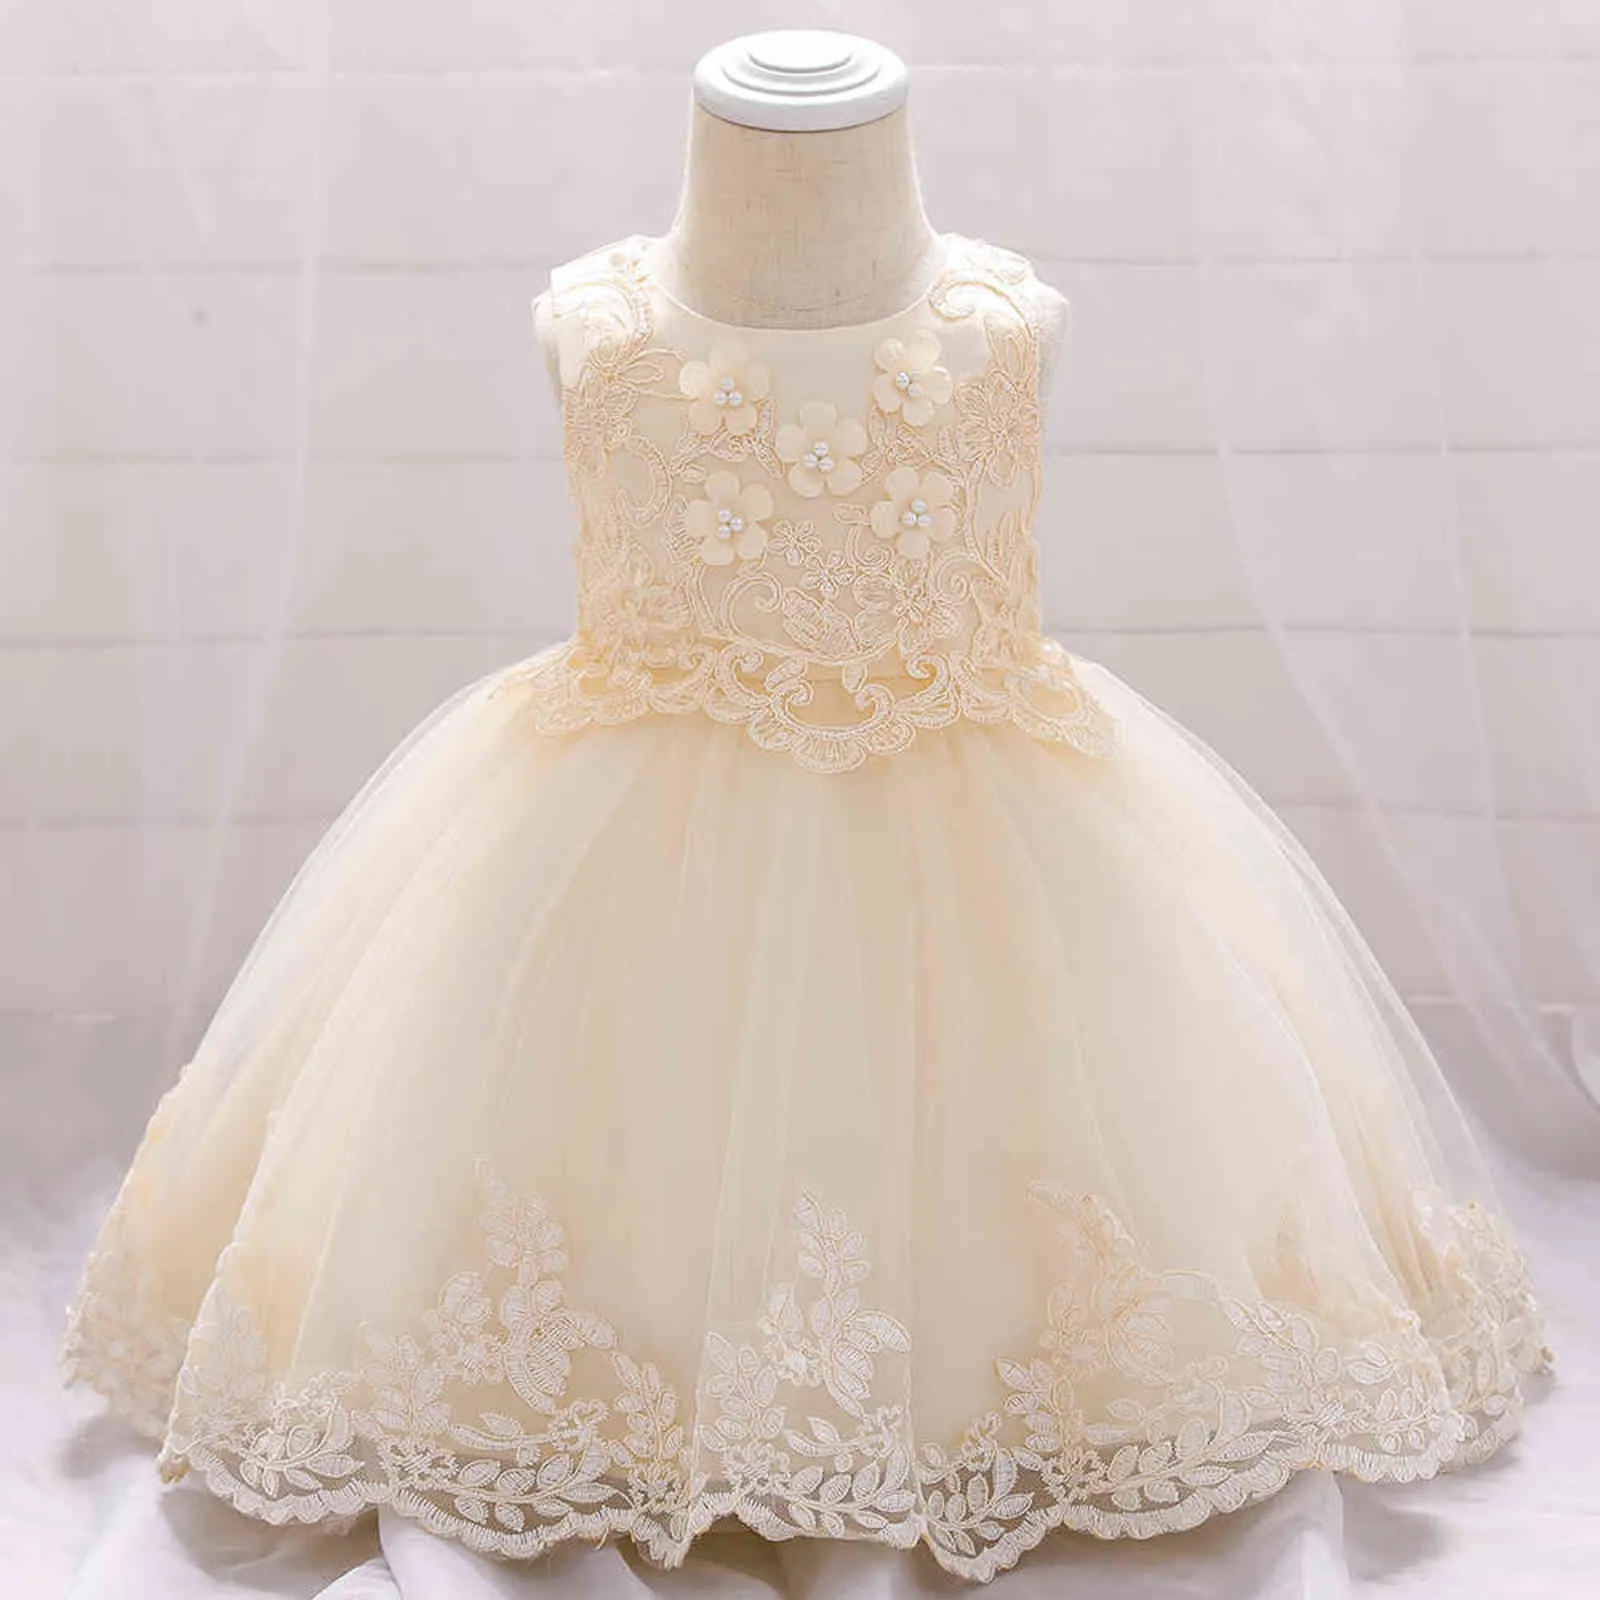 2021 Baby Mädchen Sommer Kleider Applikation Spitze Säuglingskleid Baby Mädchen Prinzessin Kleid Kleinkind Geburtstag Party Hochzeit Kleid Kleidung G1129